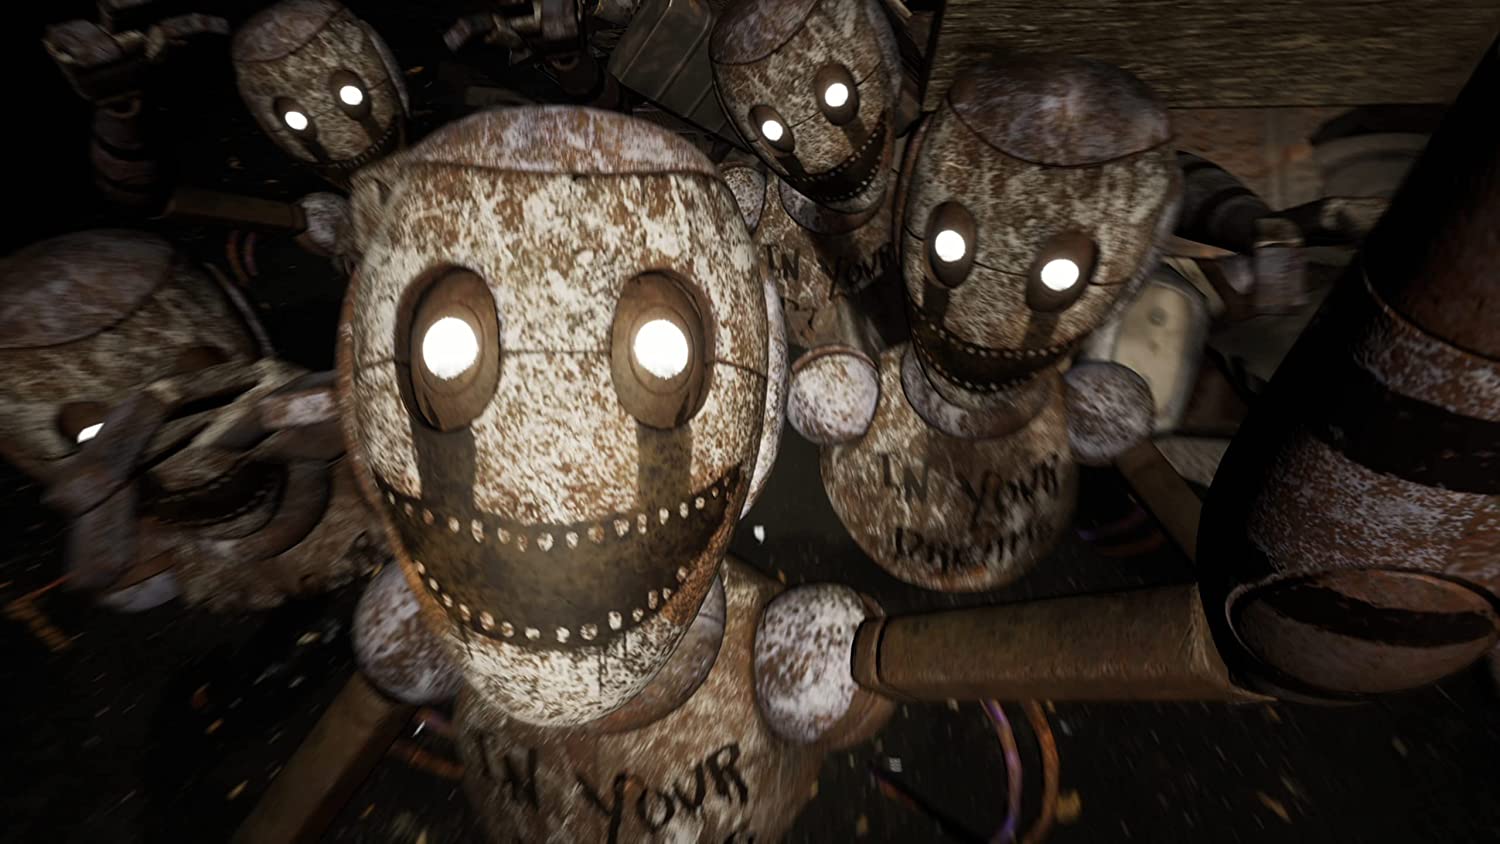 Série de jogos Five Nights at Freddy's será relançada para consoles e  celulares